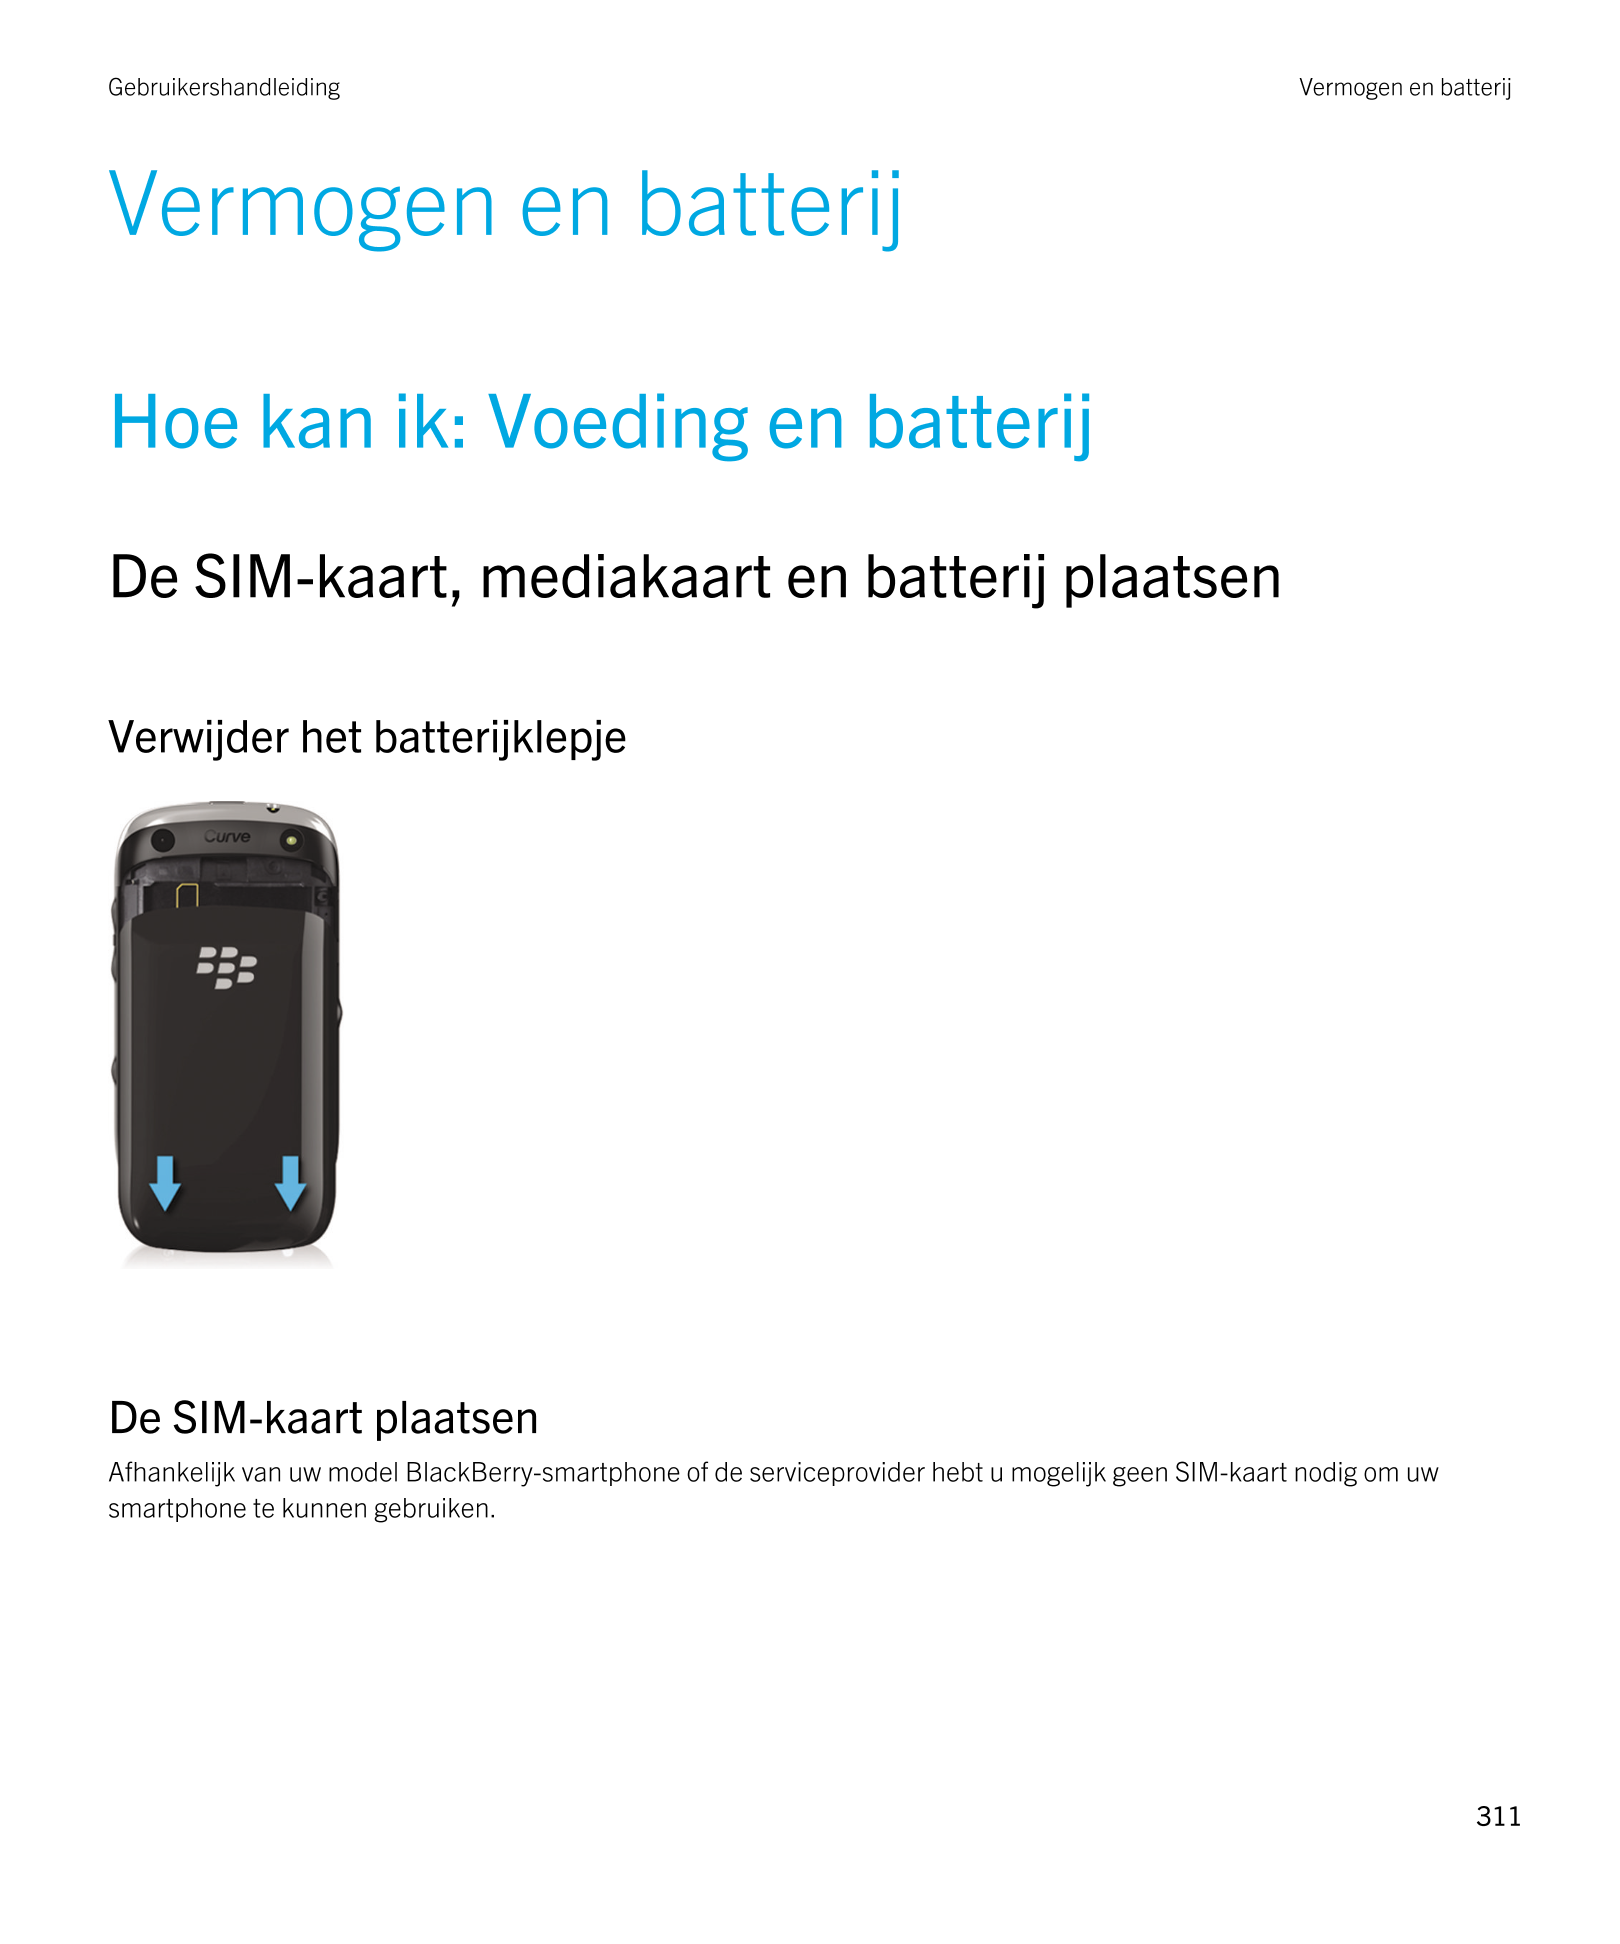 Gebruikershandleiding Vermogen en batterij
Vermogen en batterij
Hoe kan ik: Voeding en batterij
De SIM-kaart, mediakaart en batt